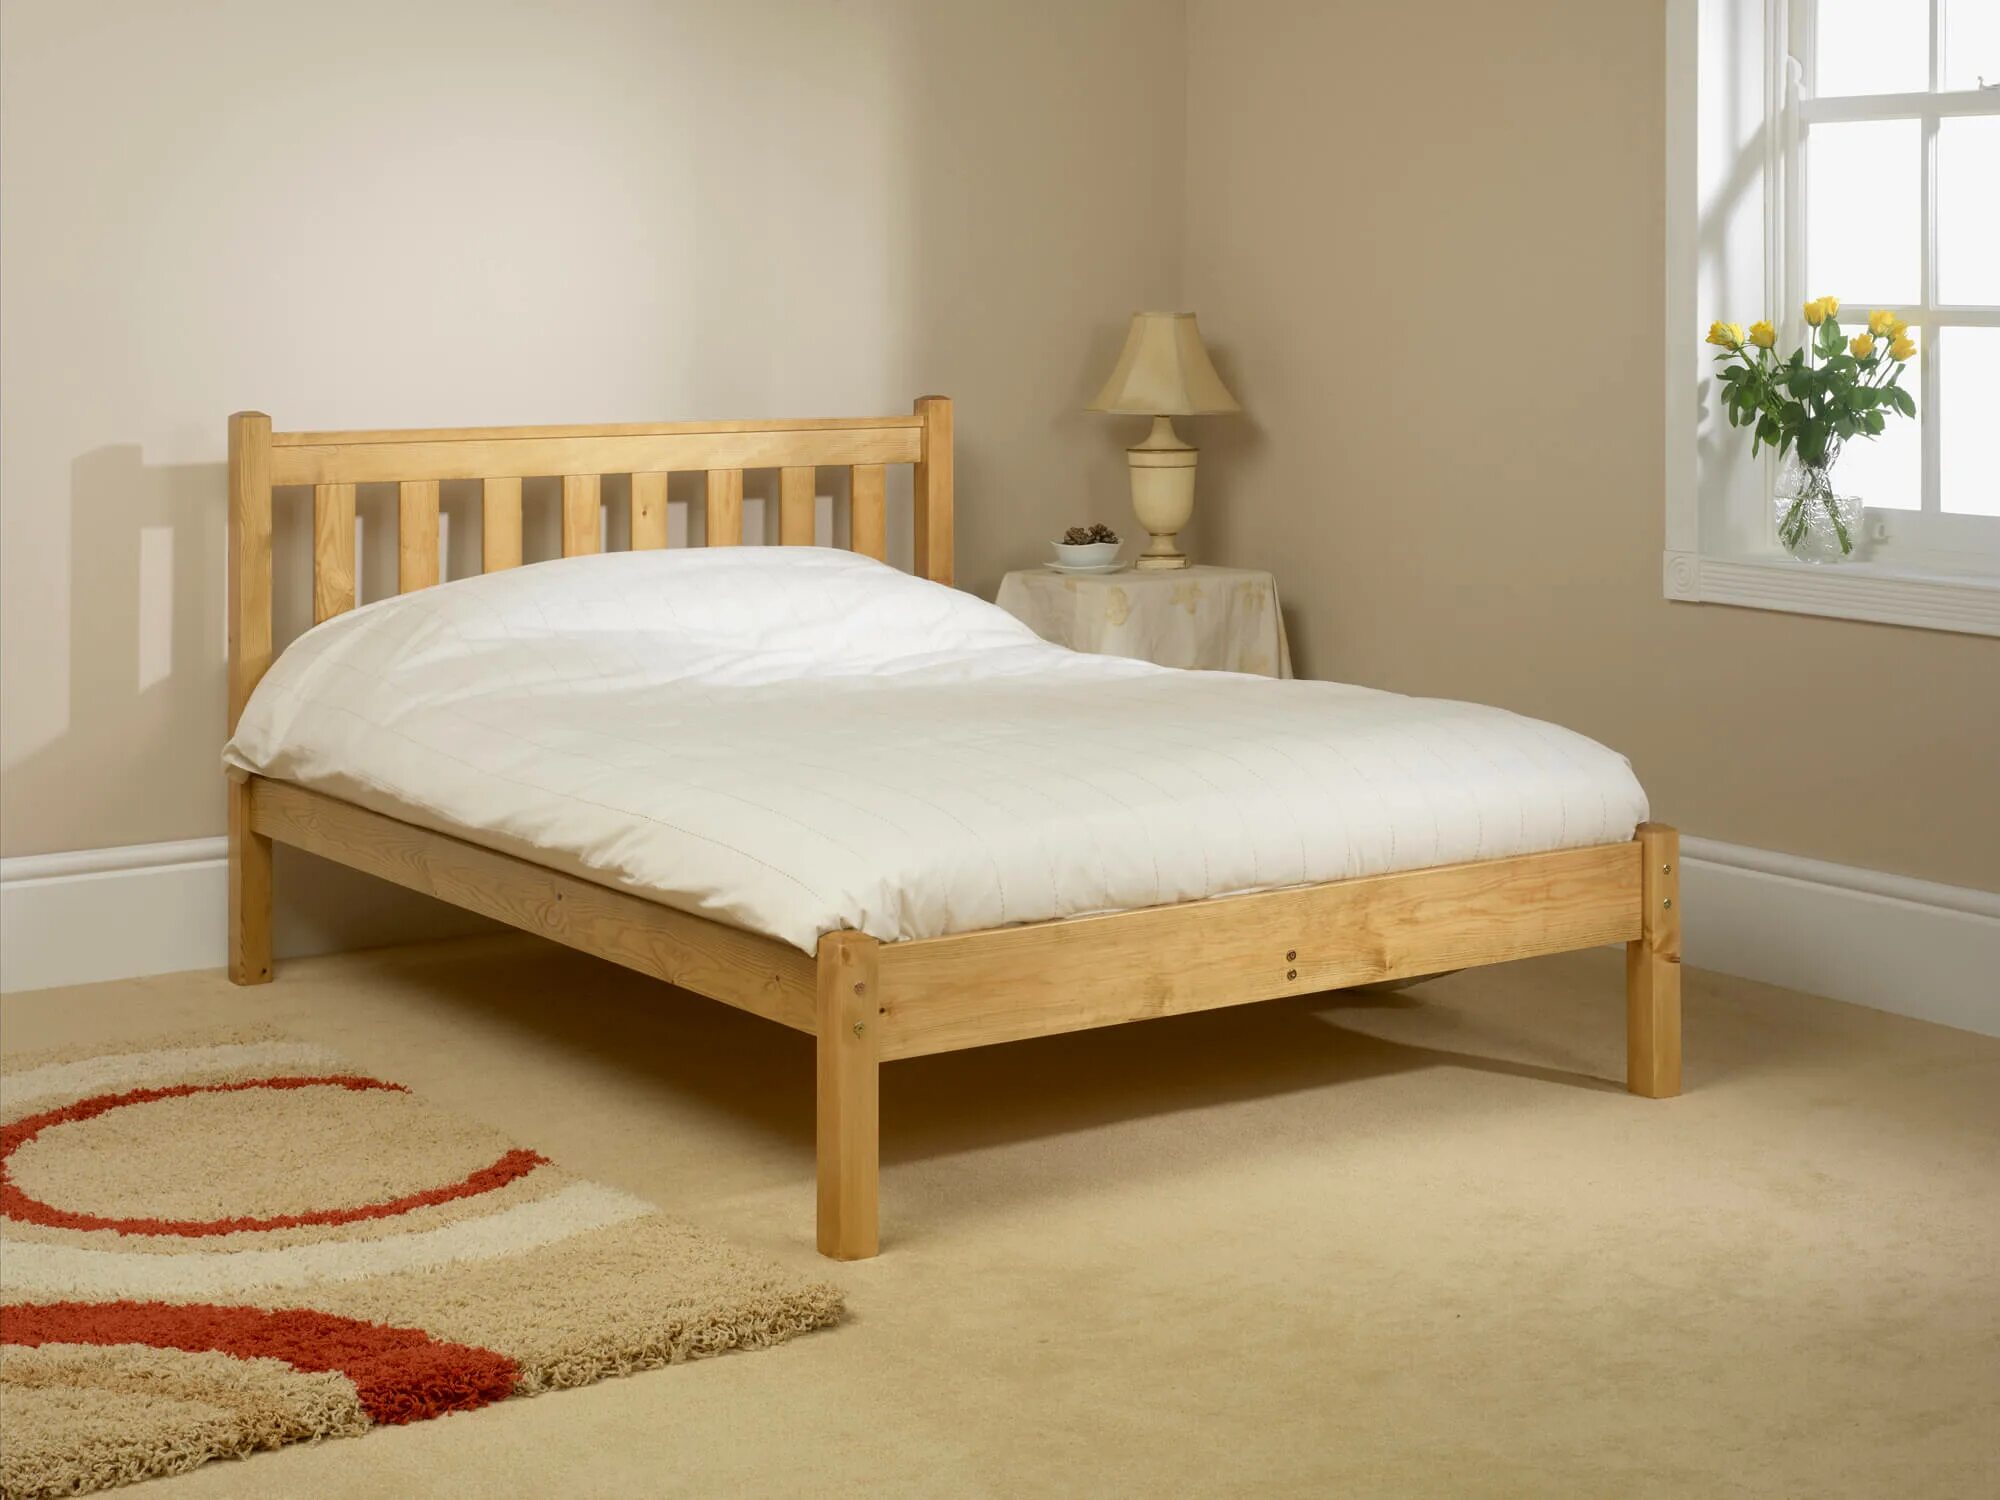 Кровать деревянная. Простая деревянная кровать. Кровать из массива дерева. Кровать двуспальная деревянная.